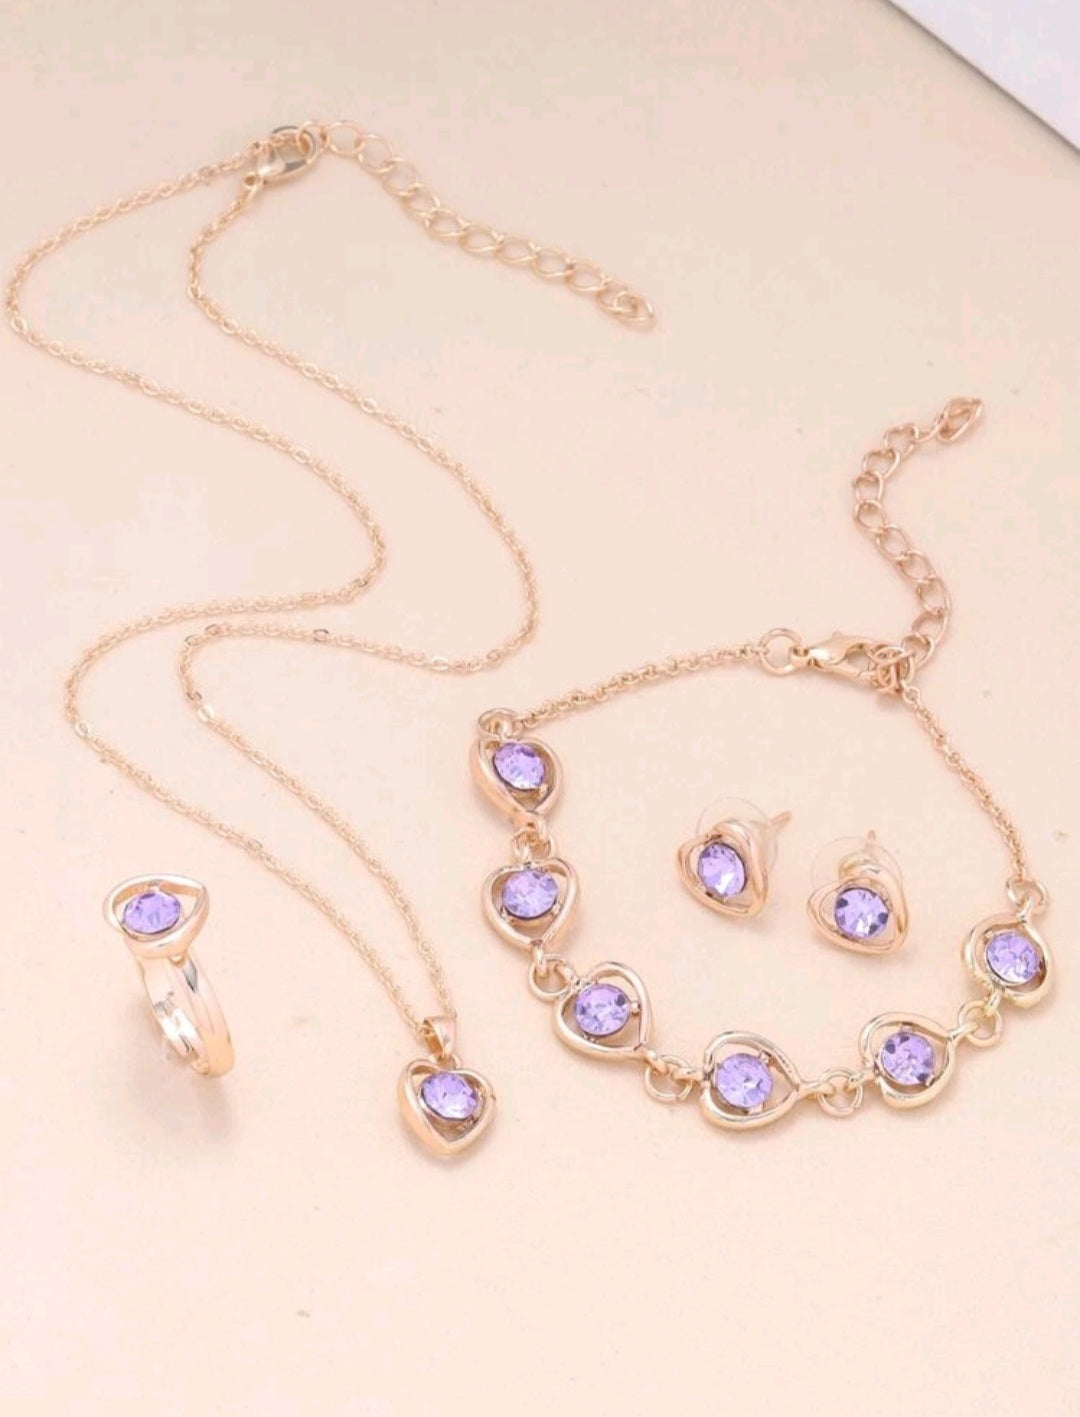 Handmade Gemstone Jewellery Sets{Necklace, Earrings&Ring}~ Set di gioielli fatti a mano con pietre preziose ~ collana, orecchini&anello - SANDY'S MAKEUP AND ARTISTRY 